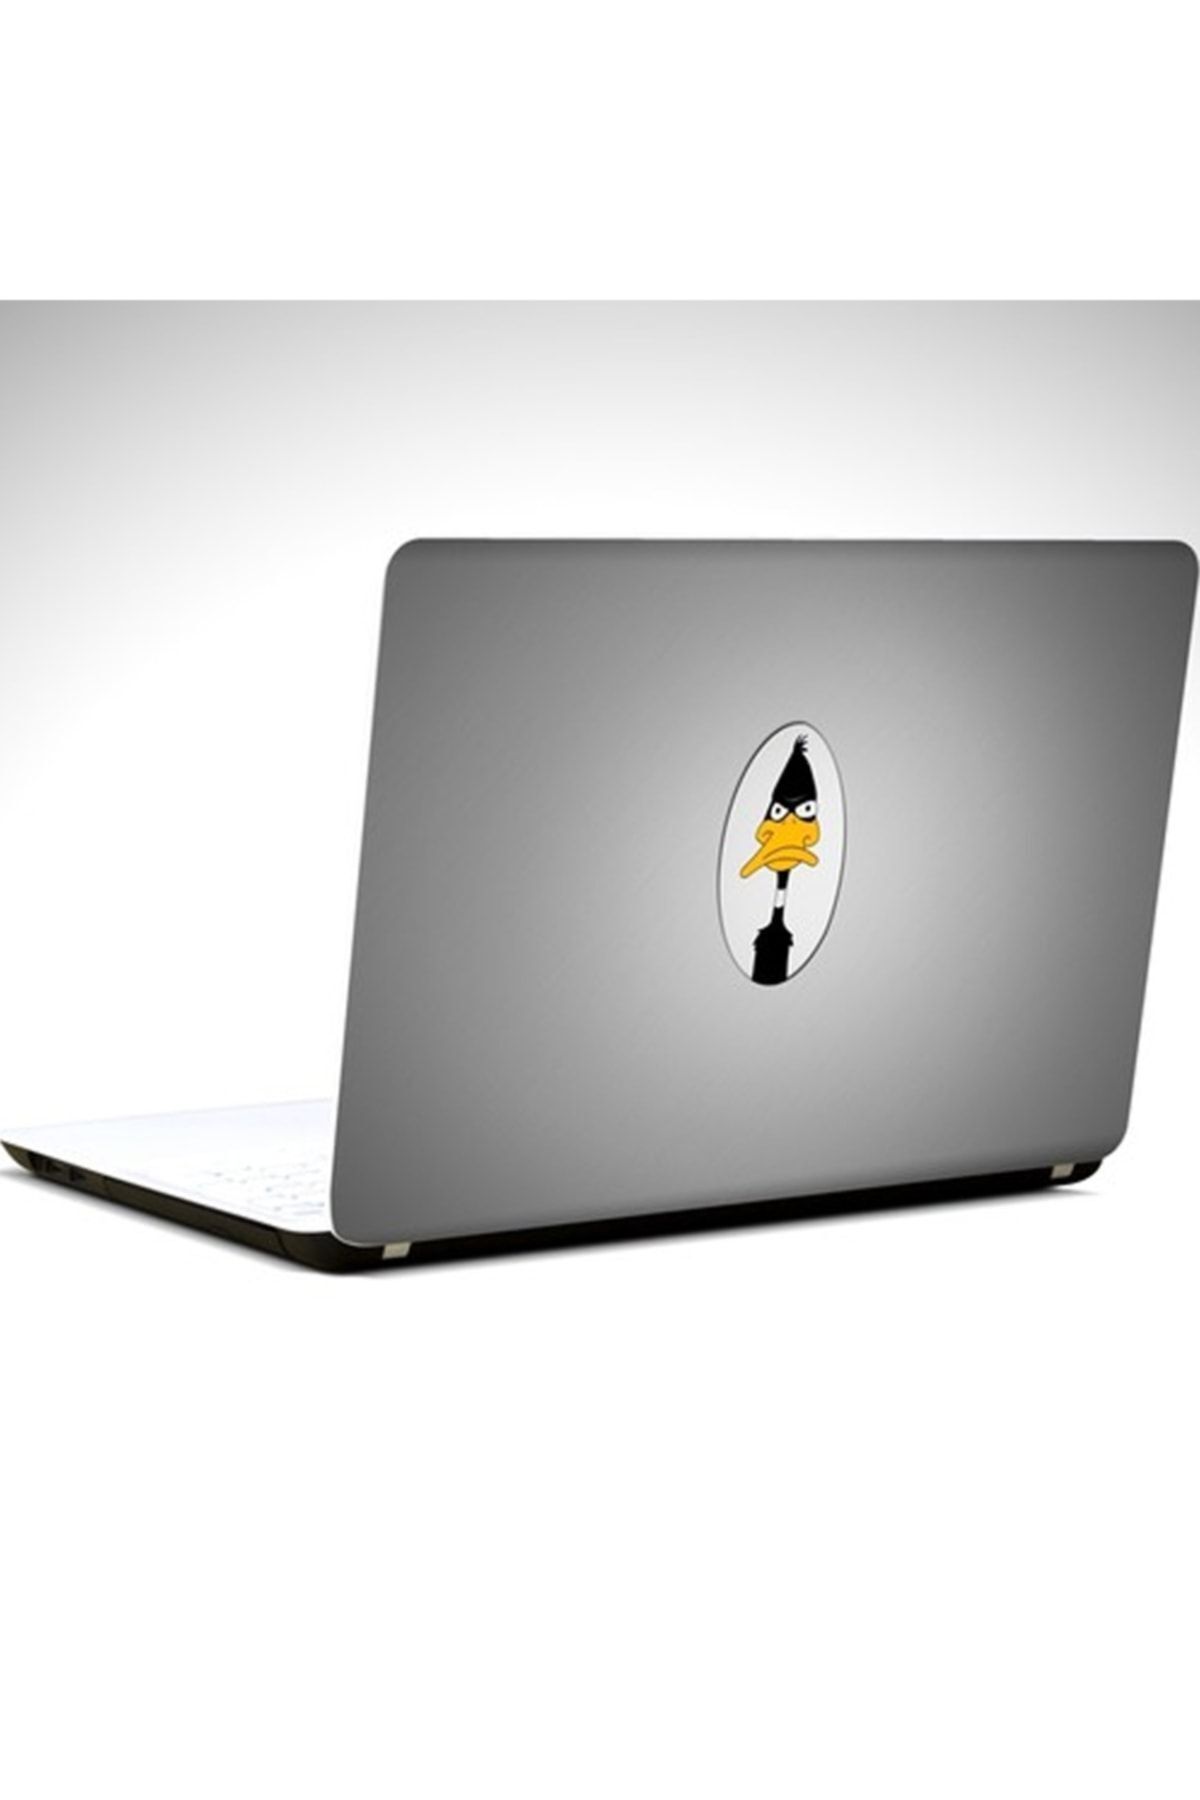 KT Decor Daffy Duck Laptop Sticker 15.6 Inch